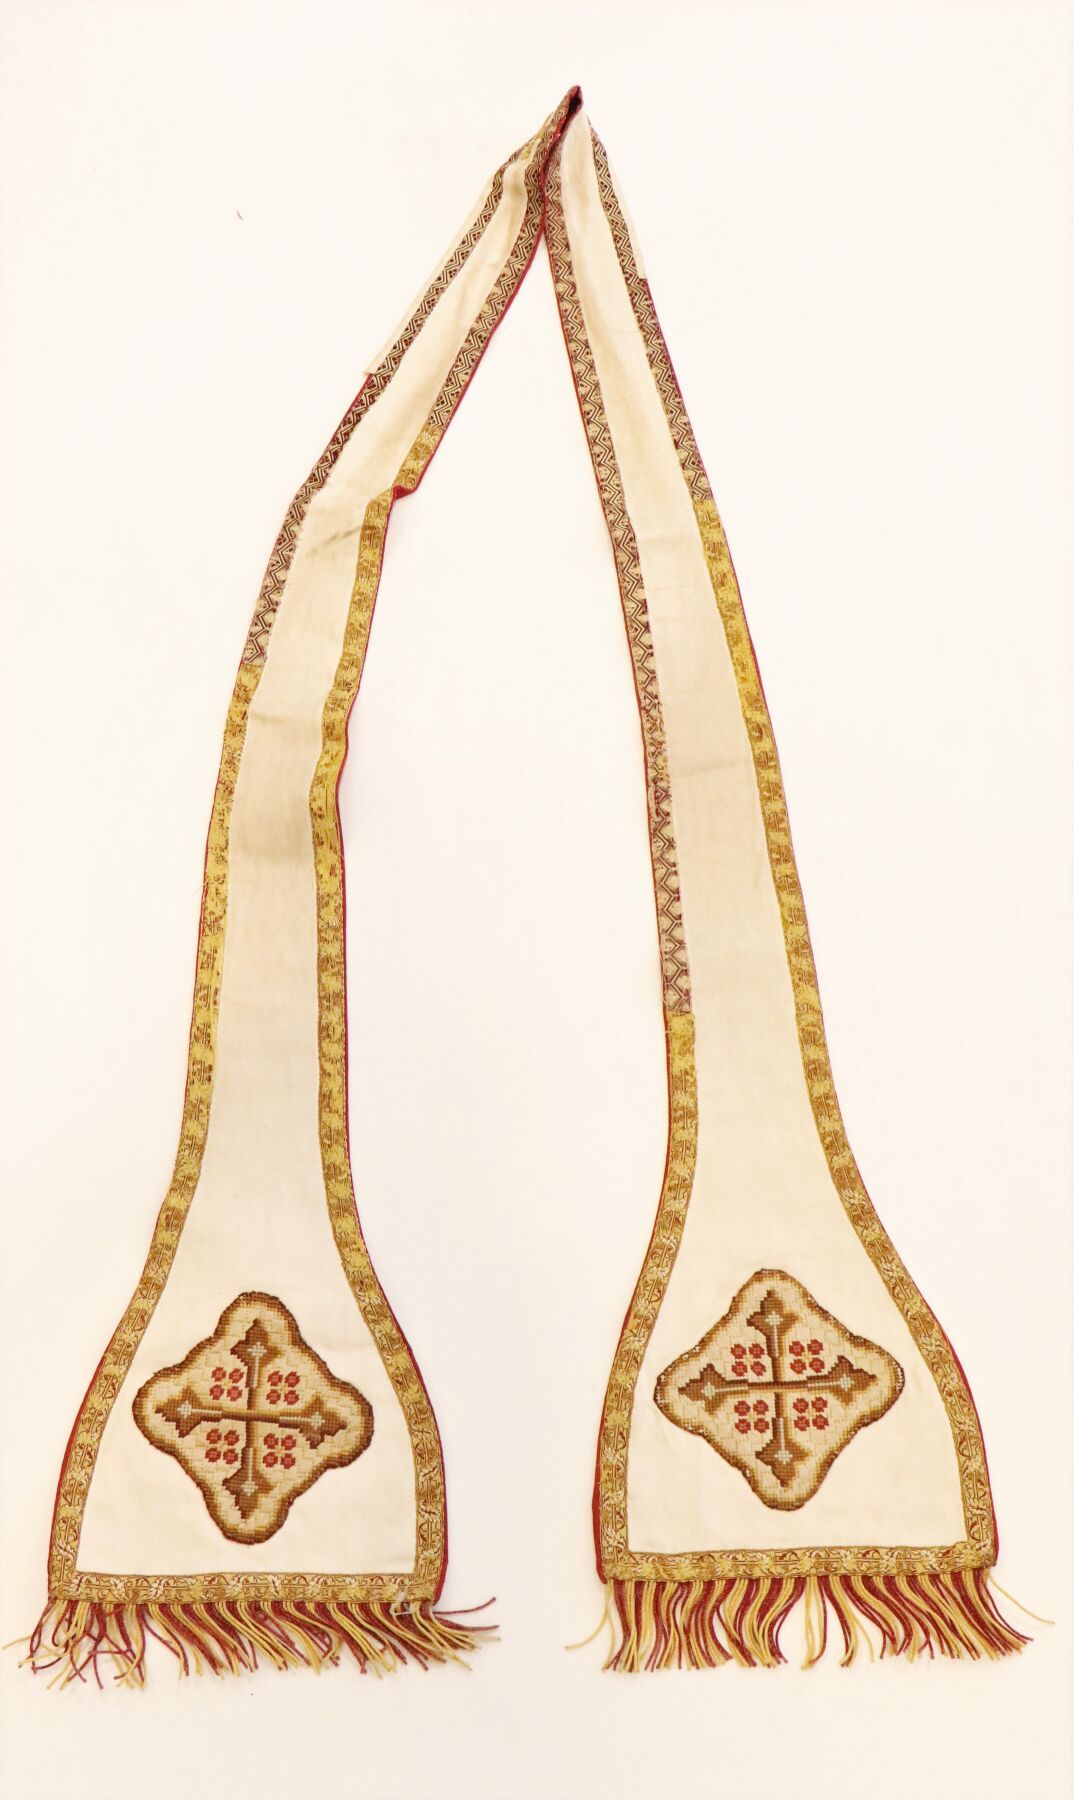 Null Religiöse Stola aus weißem Stoff mit goldenen Borten und rotem Revers. 
Ver&hellip;